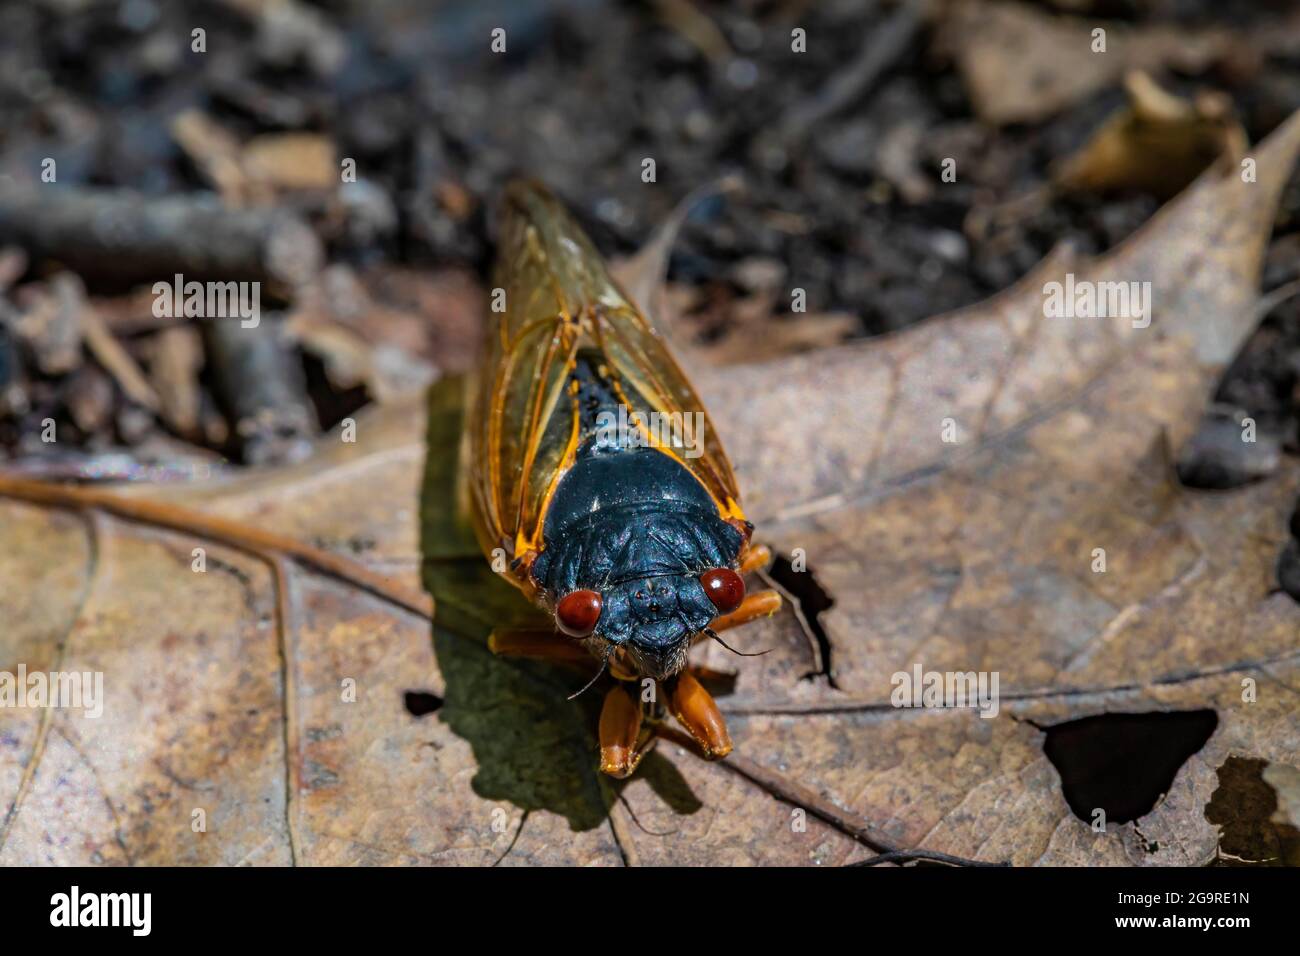 La cicada morte de la couvée X, une Cicada de 17 ans, Magicicada sp., est apparue en juin 2021 dans la réserve naturelle de Cherry Hill près d'Ann Arbor et Ypsilanti, Michigan Banque D'Images